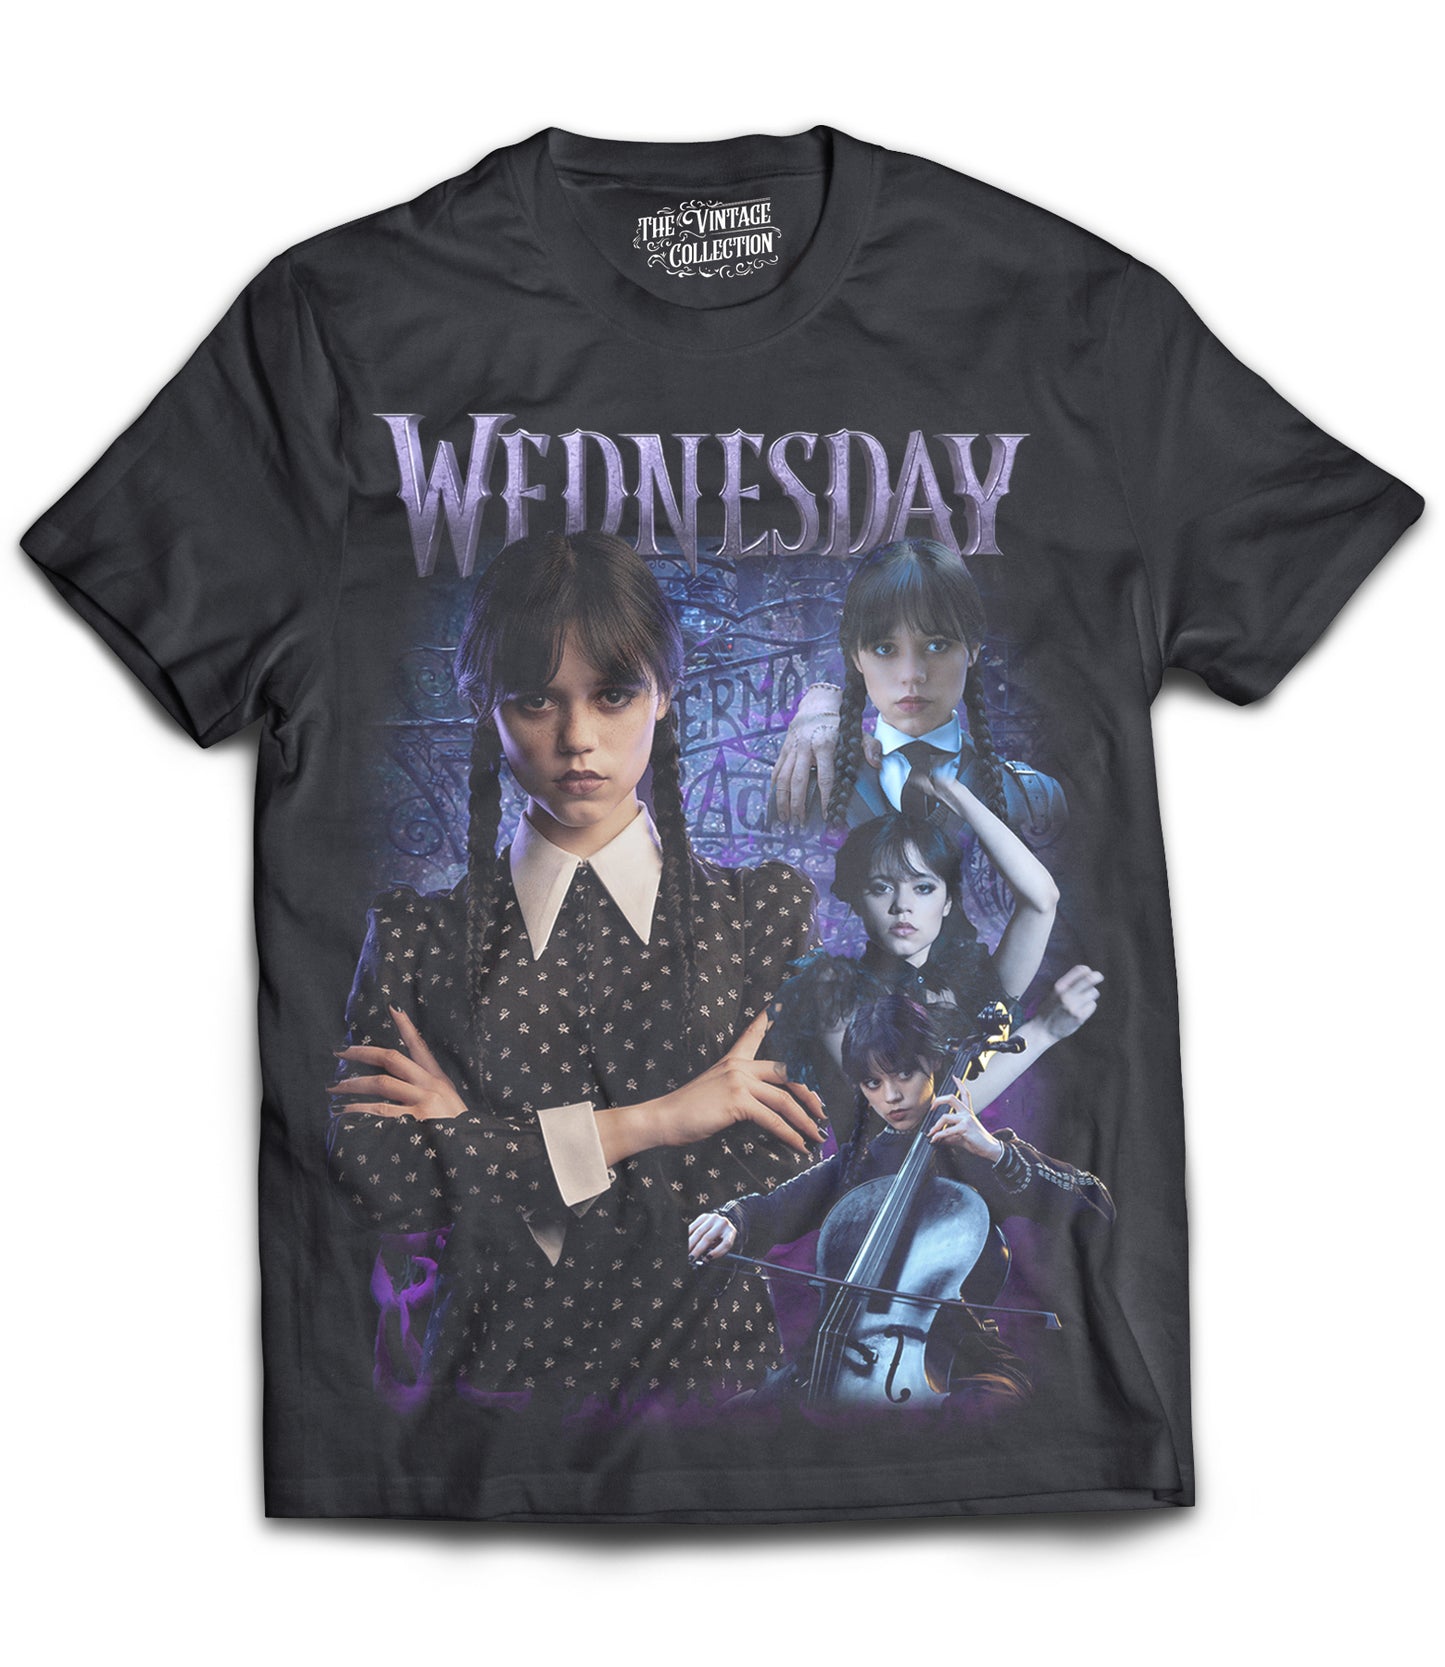 Wednesday Tribute Shirt